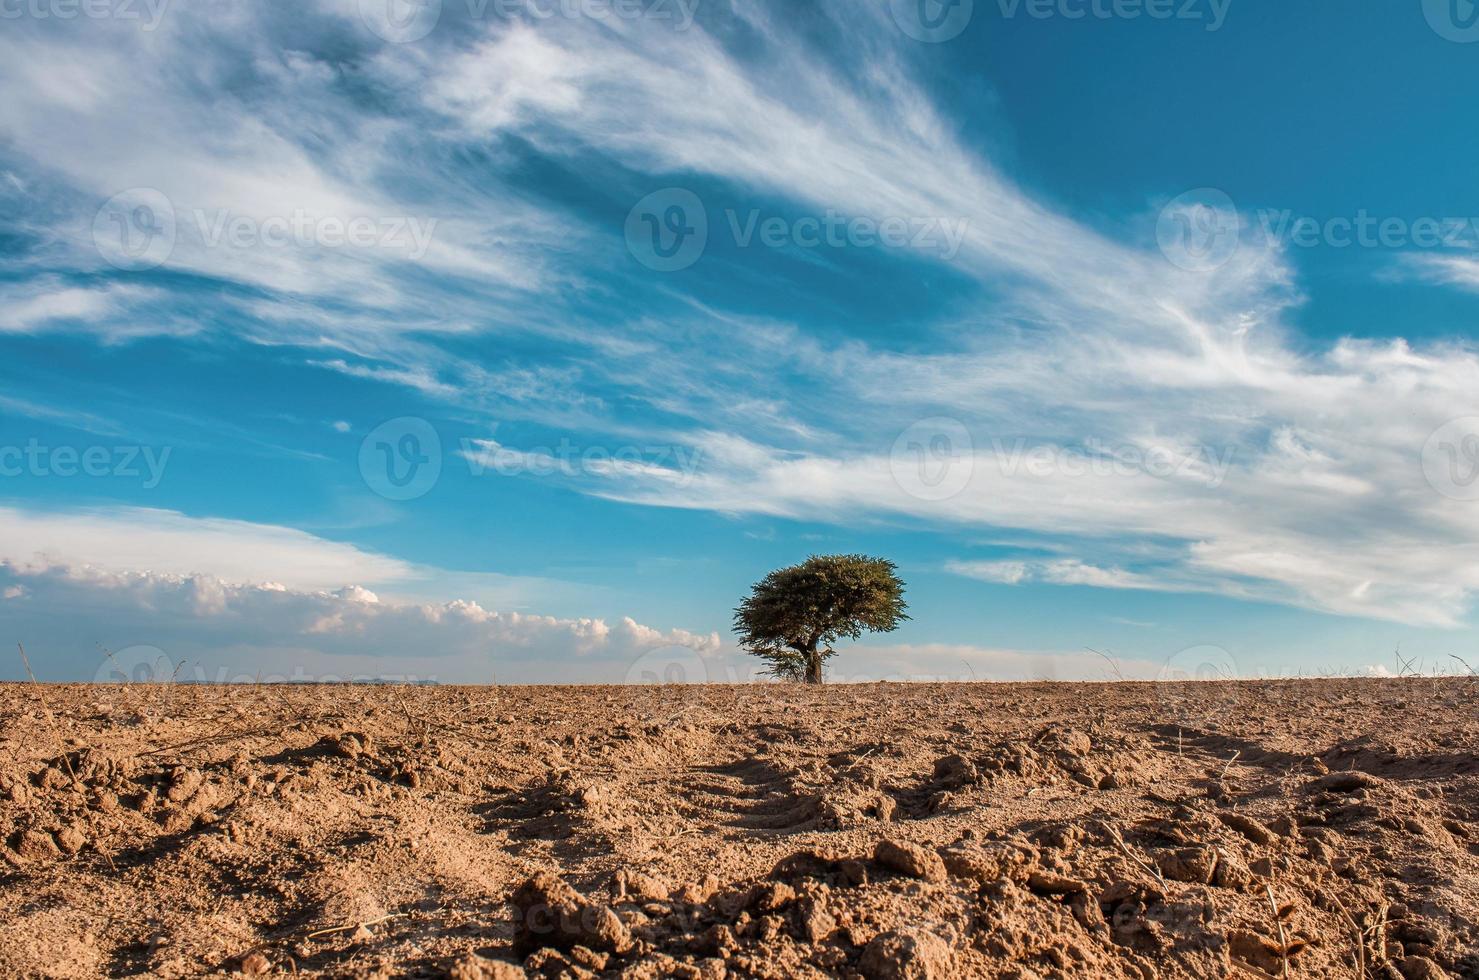 árvore solitária no meio do deserto foto